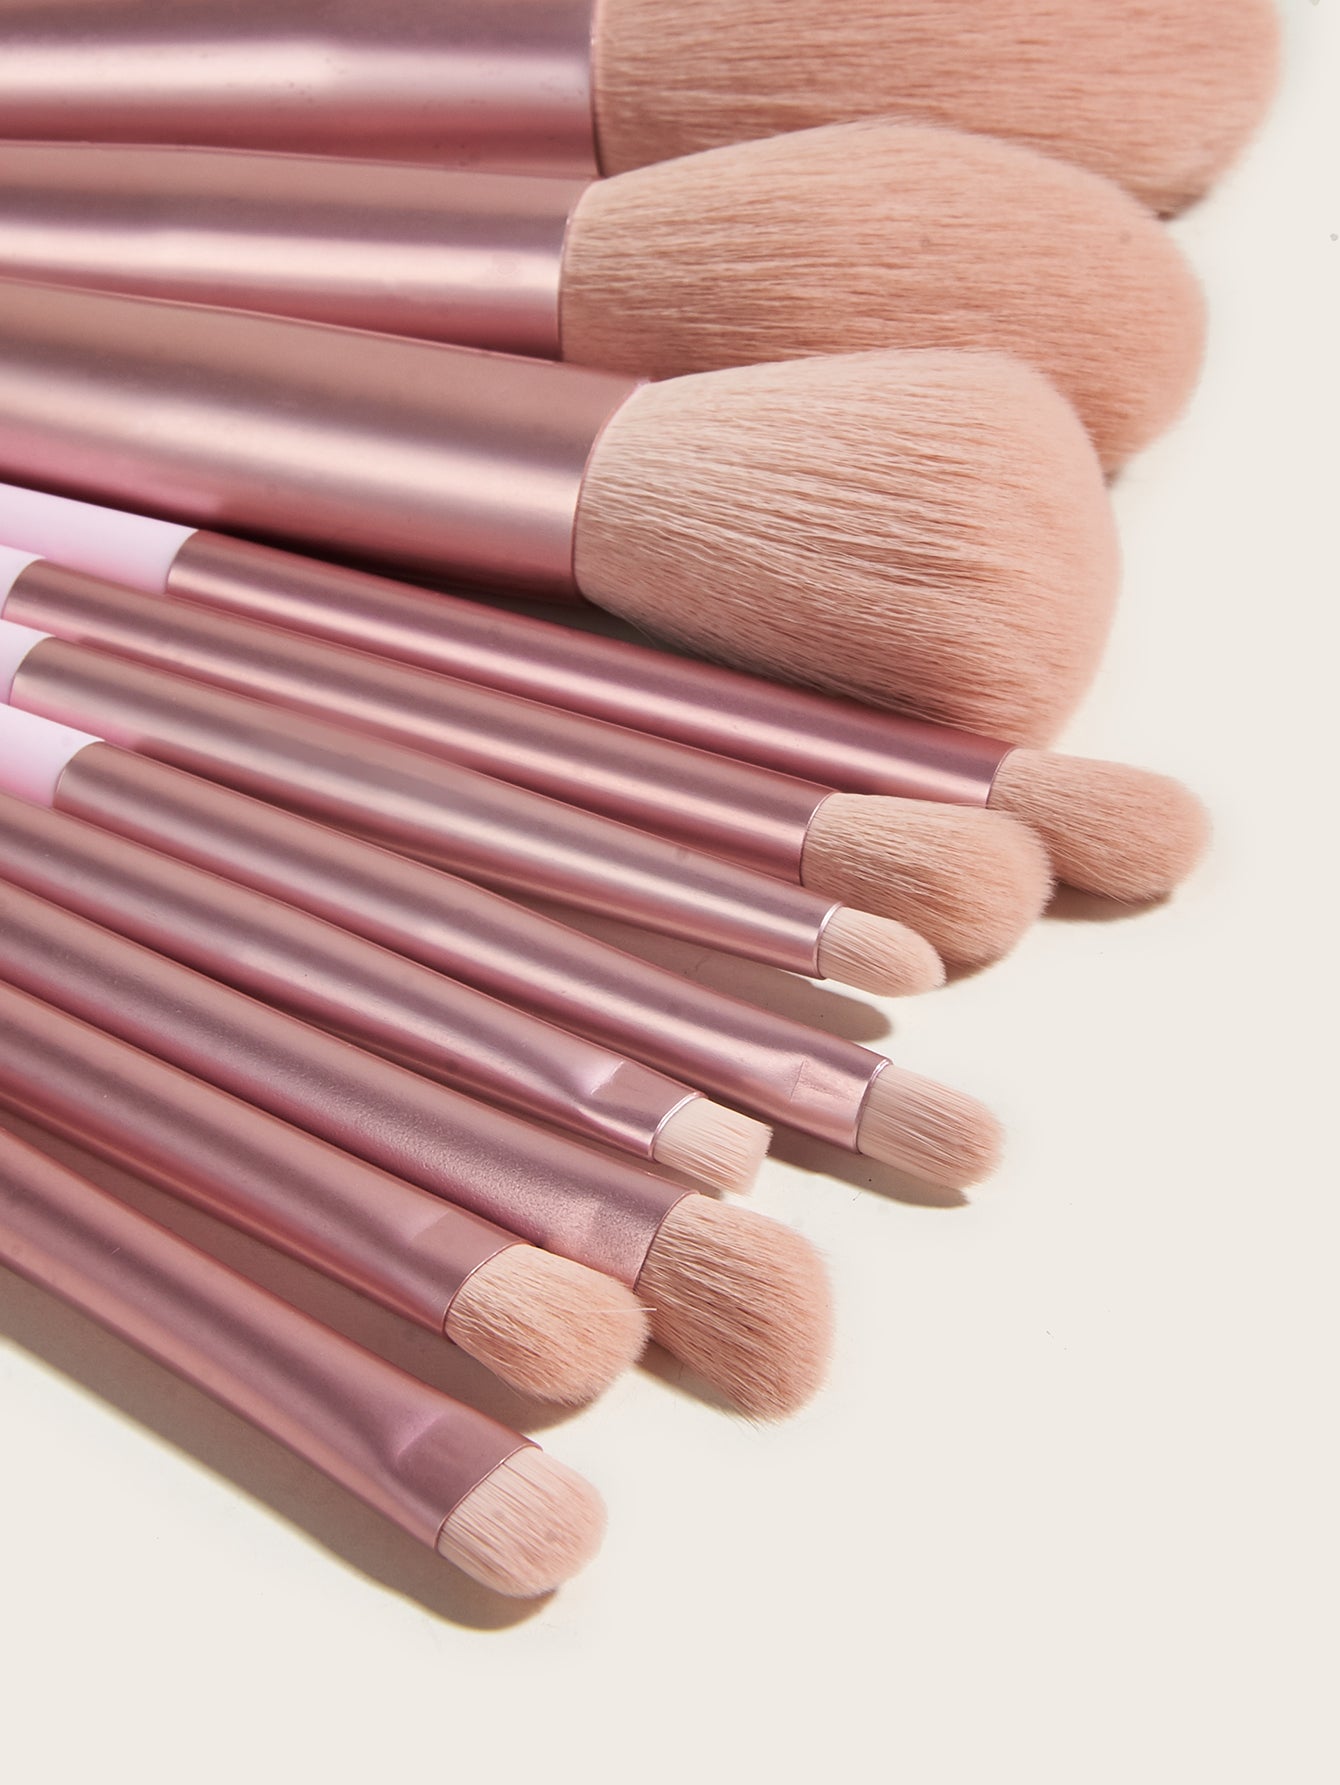 YT beauty  11 pcs pink color Makeup Brushes set OEM logo